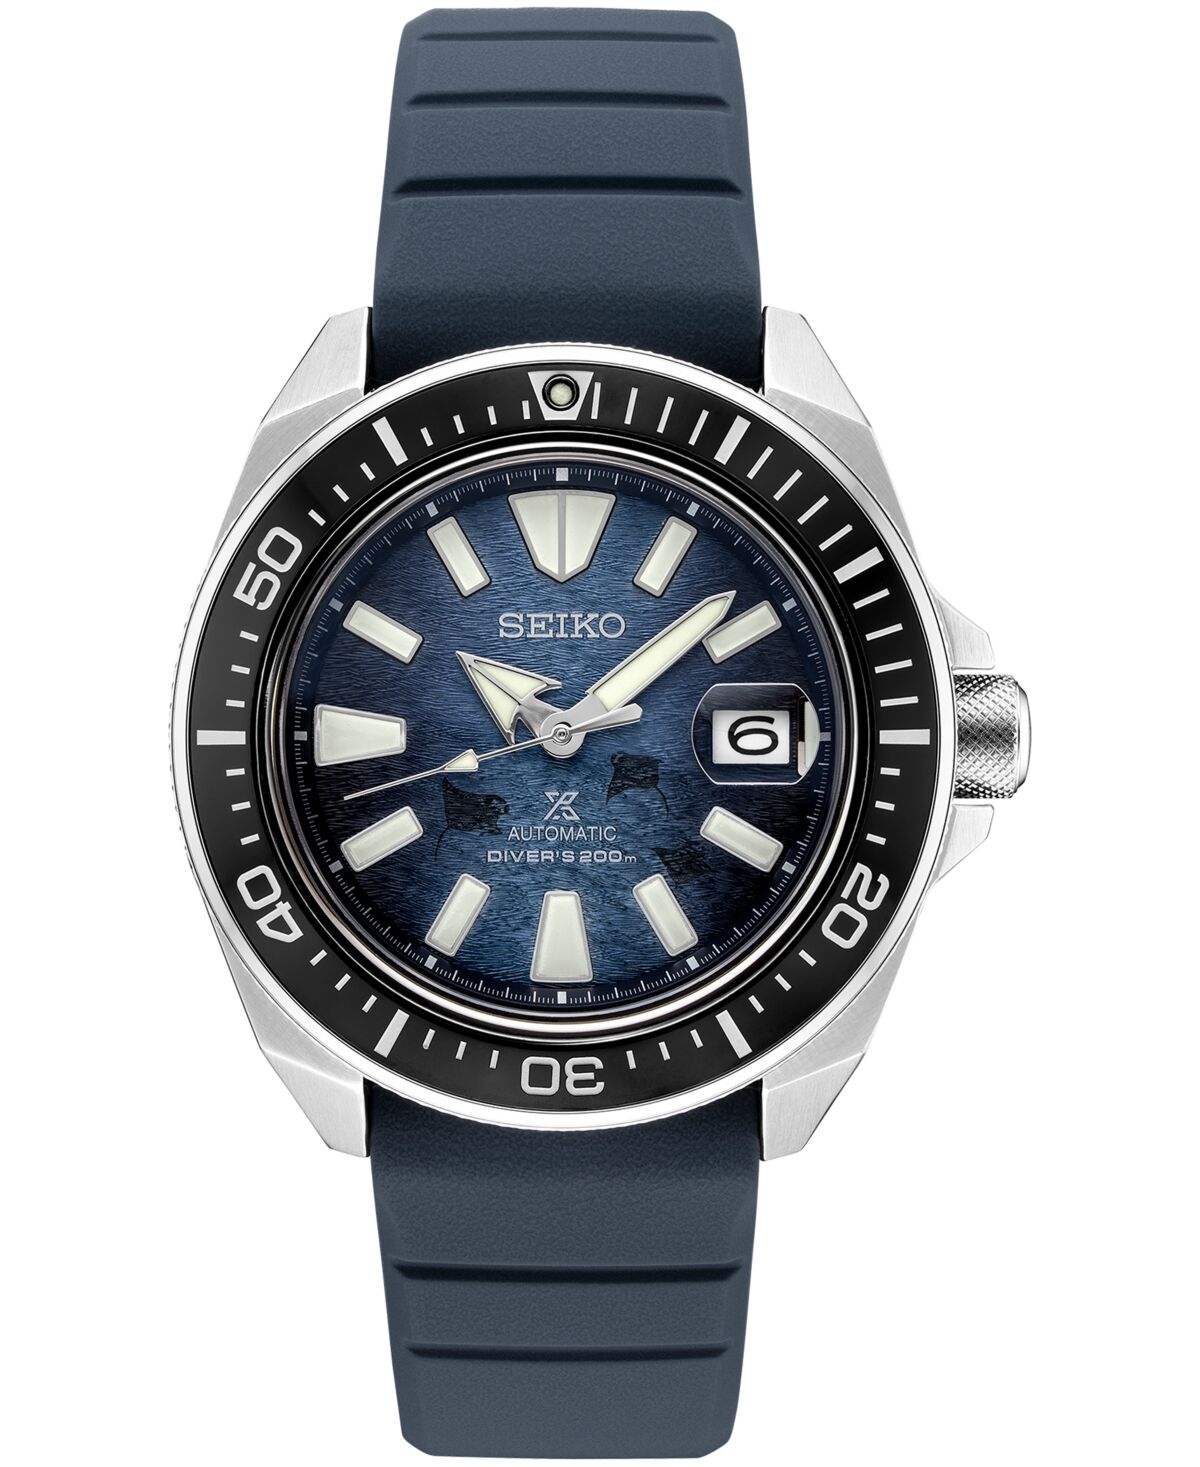 Seiko Men's Automatic Prospex Diver Dark Blue Silicone Strap Watch 45mm - Blue